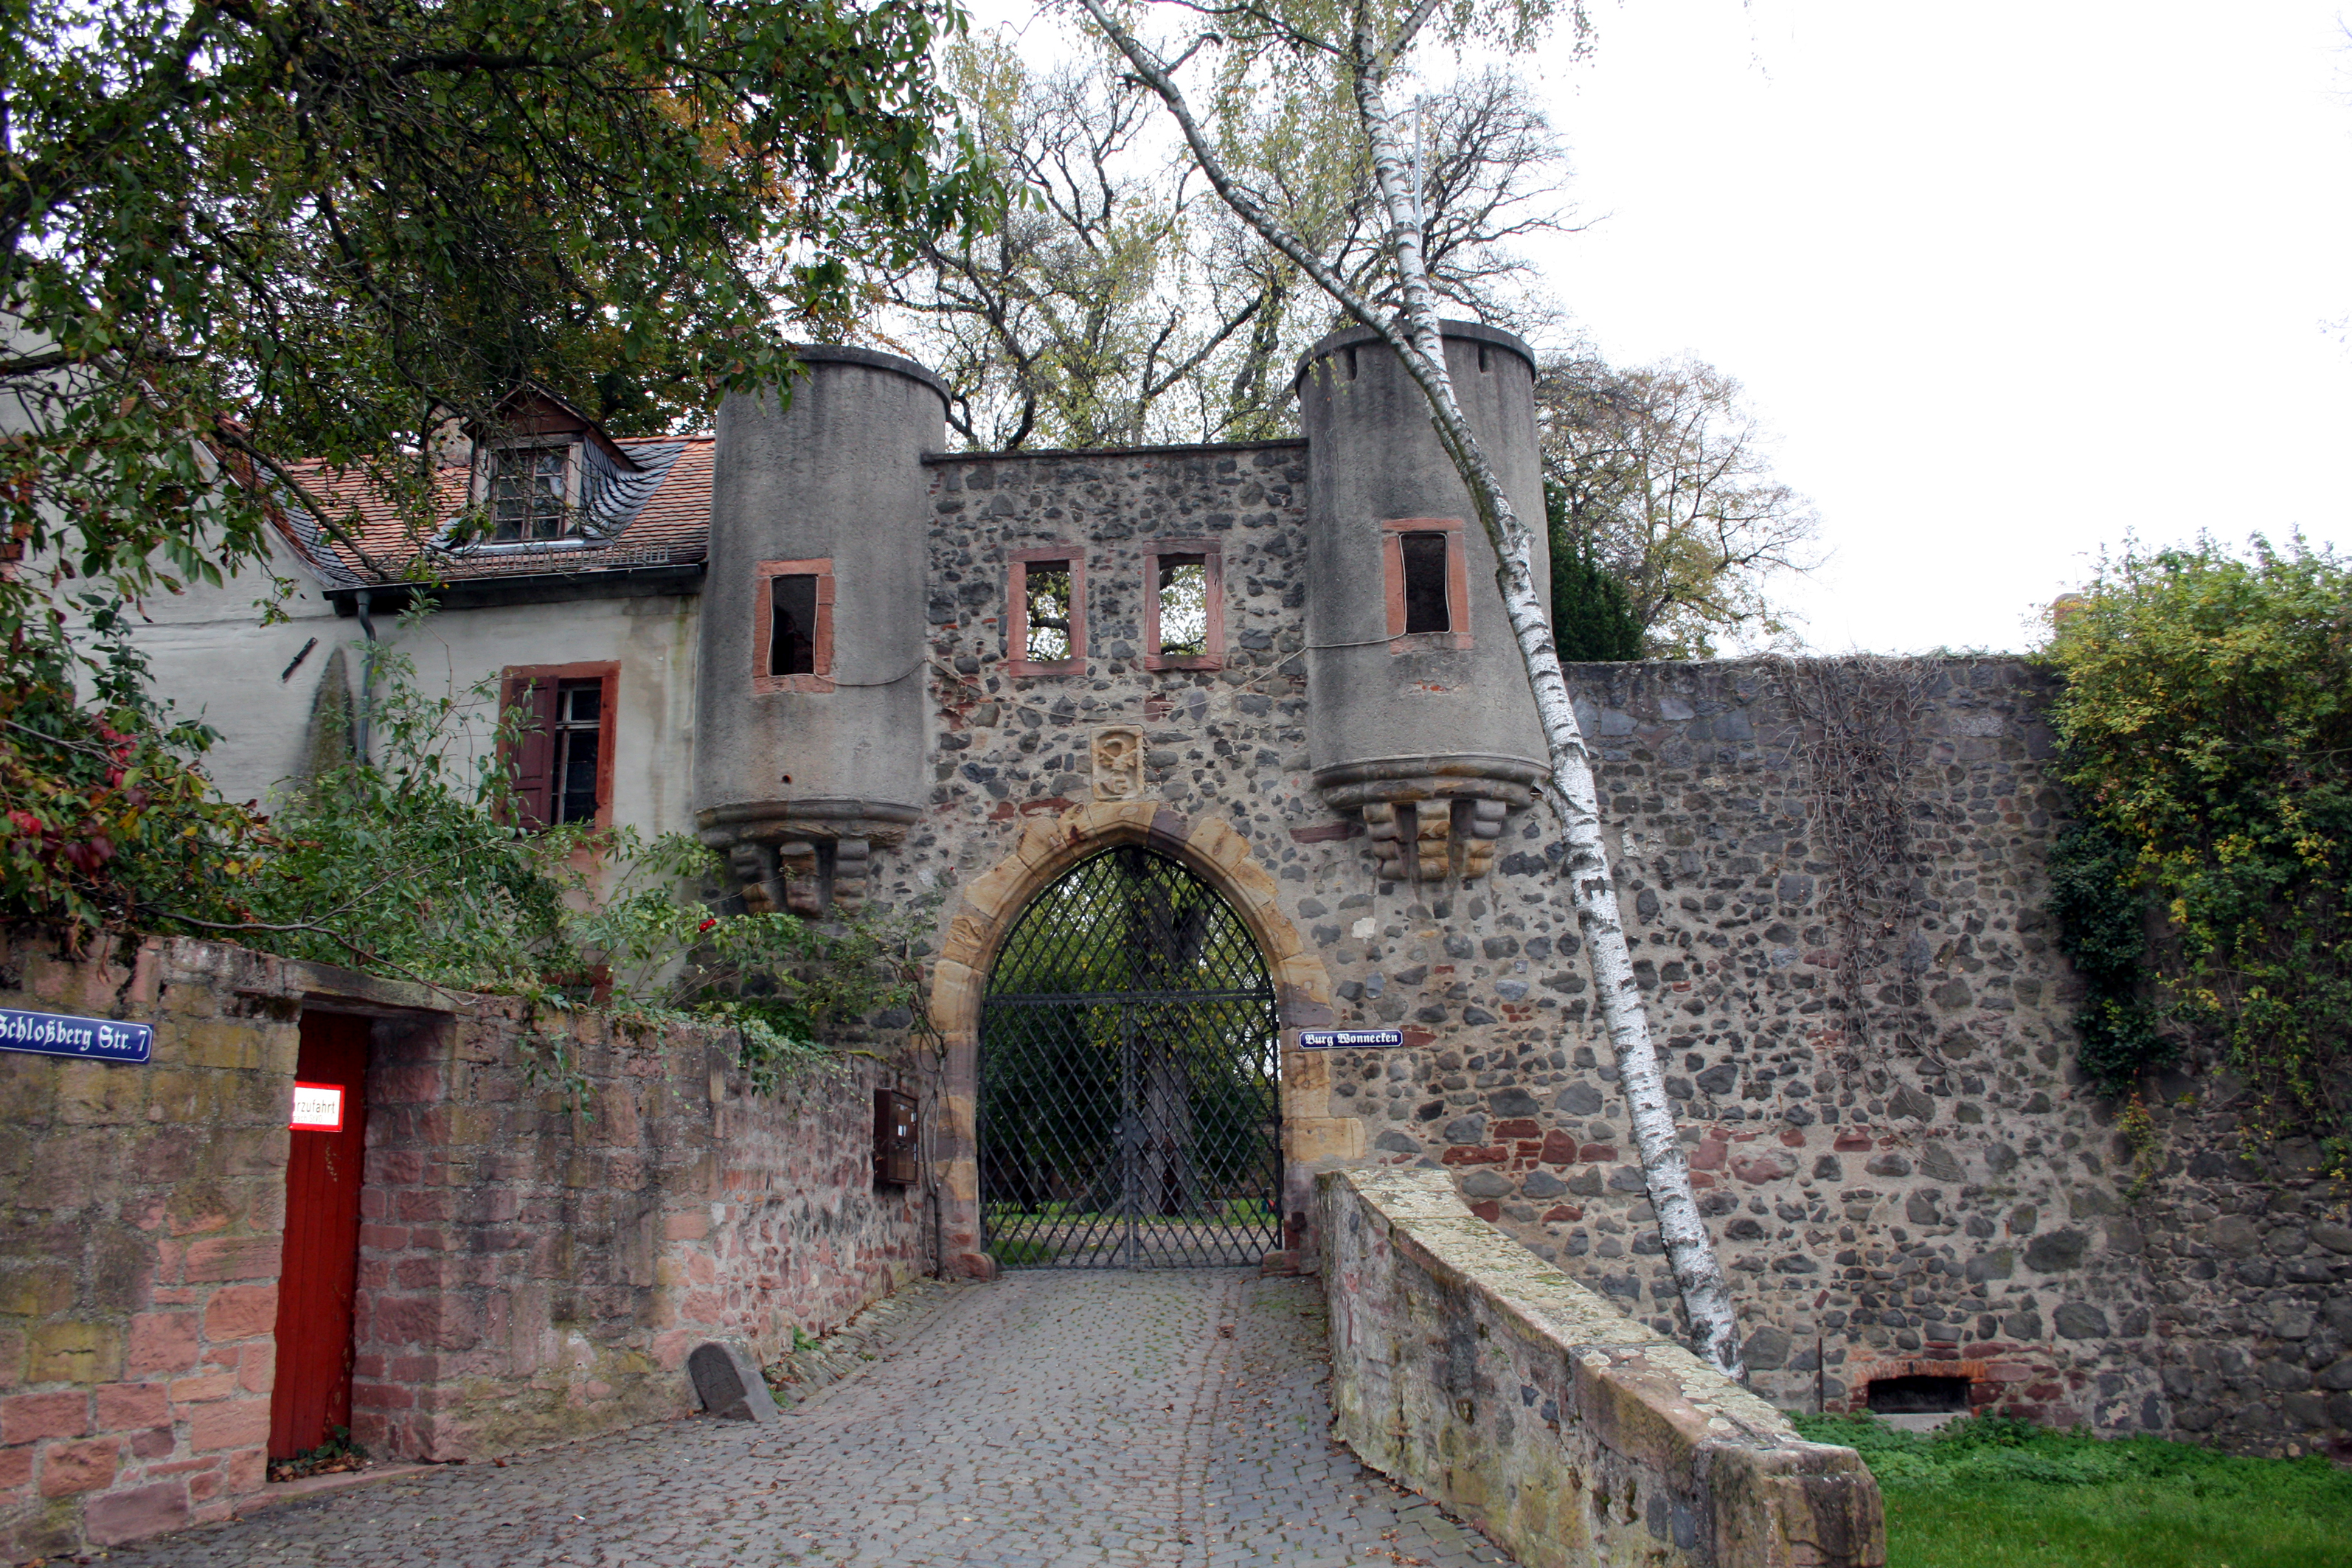 Burg-Ruine Windecken (Burg Wonnecken).
